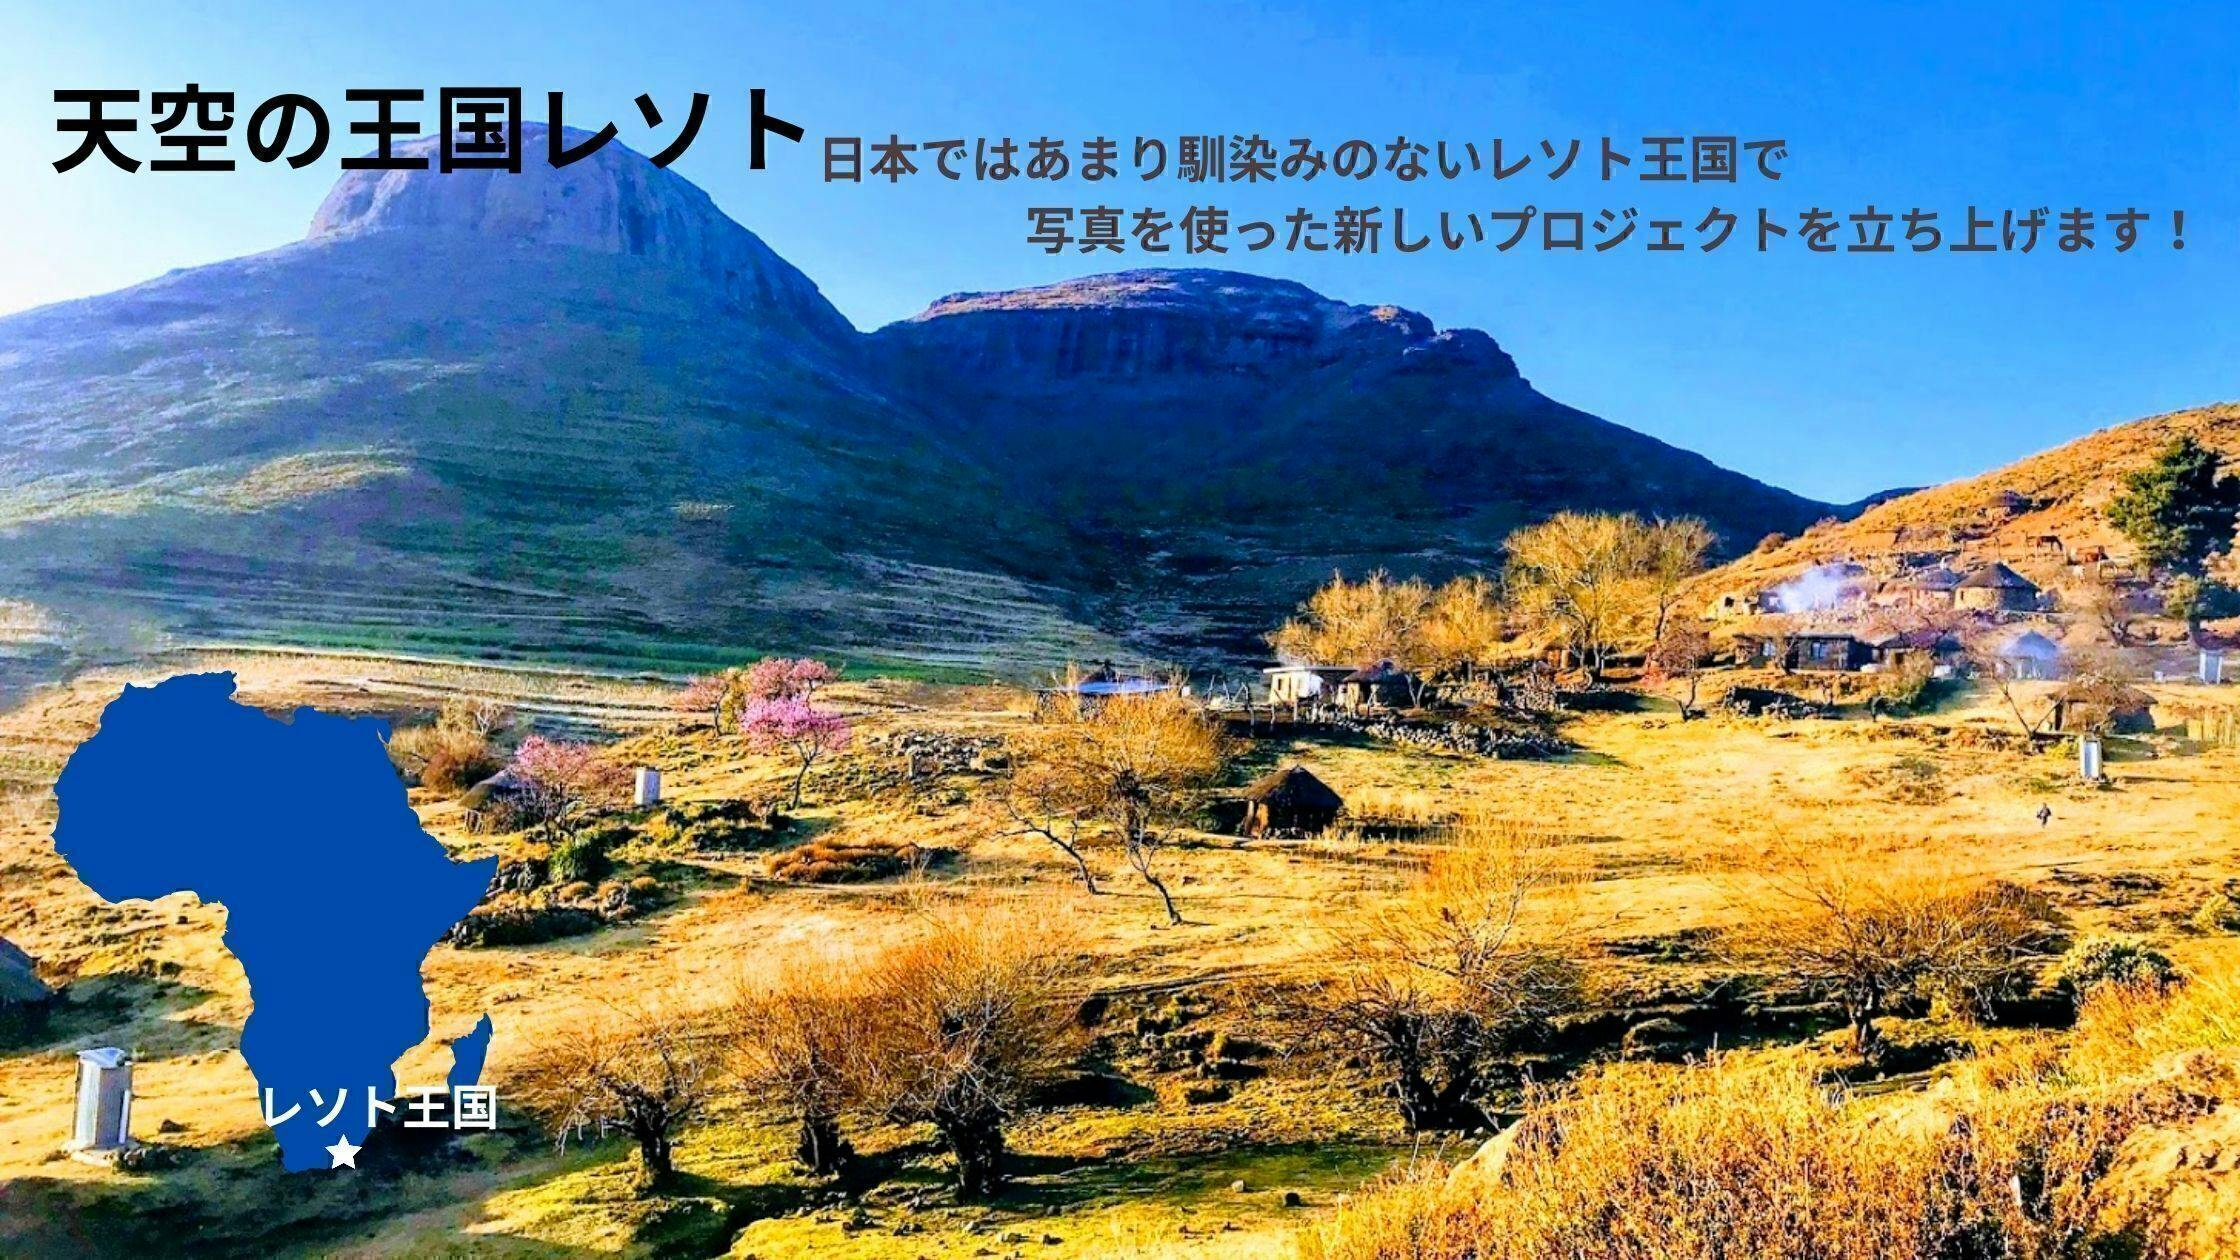 レソト王国 日本 写真を使った新しい形の教育と越境コミュニケーションの実現へ Campfire キャンプファイヤー